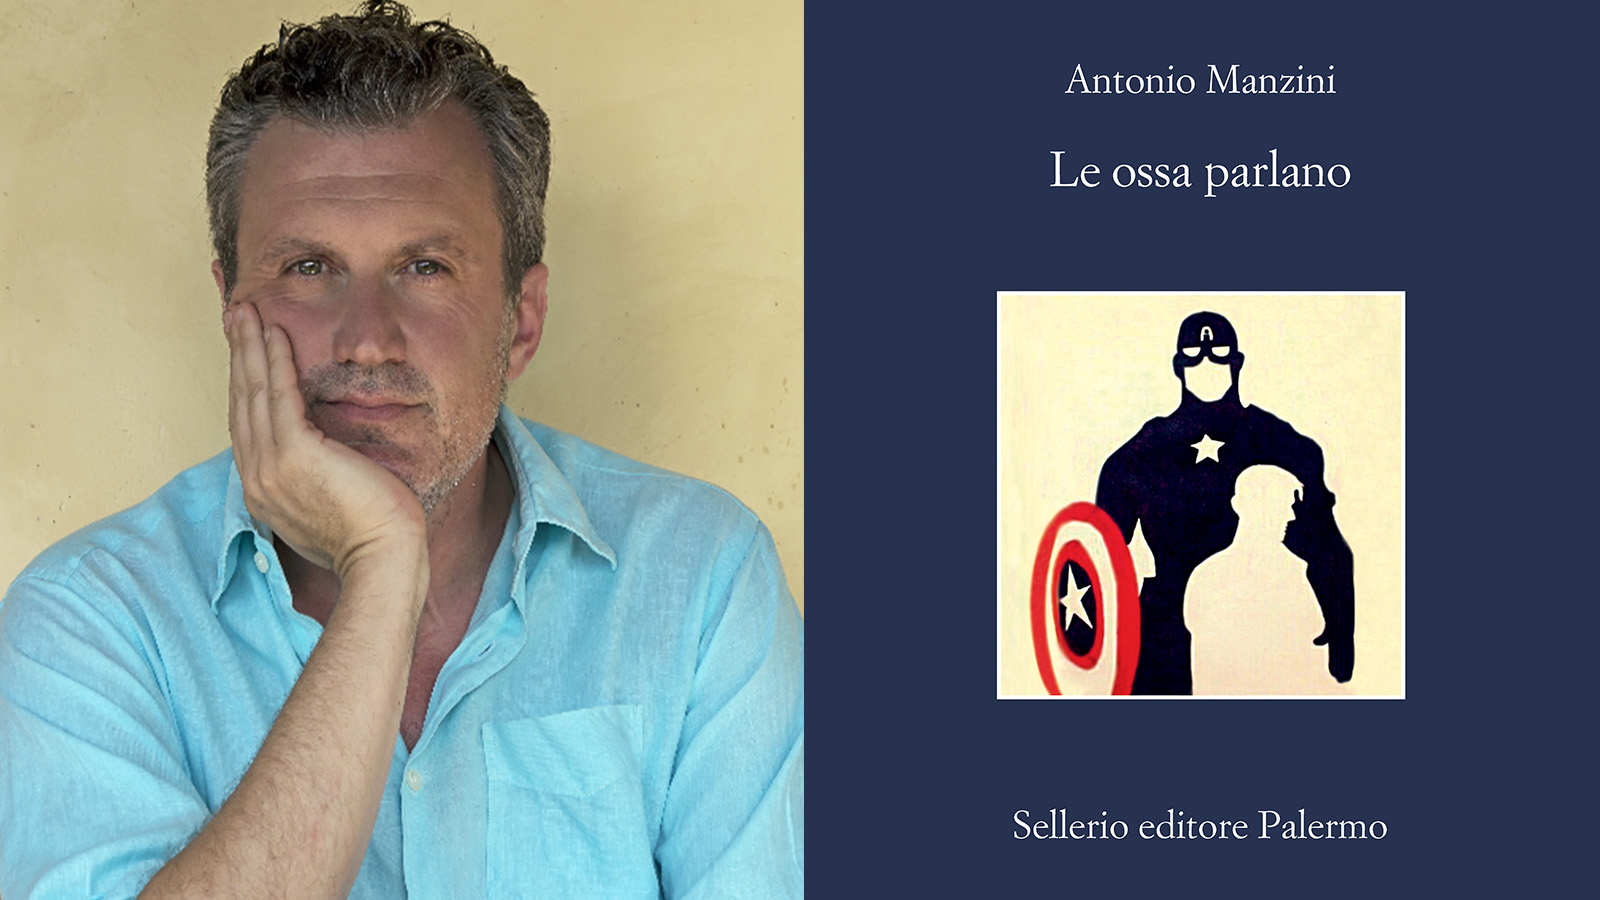 Libreria Tarantola Sesto - Antonio Manzini presenta il suo nuovo libro  Fate il vostro gioco Sellerio,sabato 13 ottobre alle 15,30 in Libreria